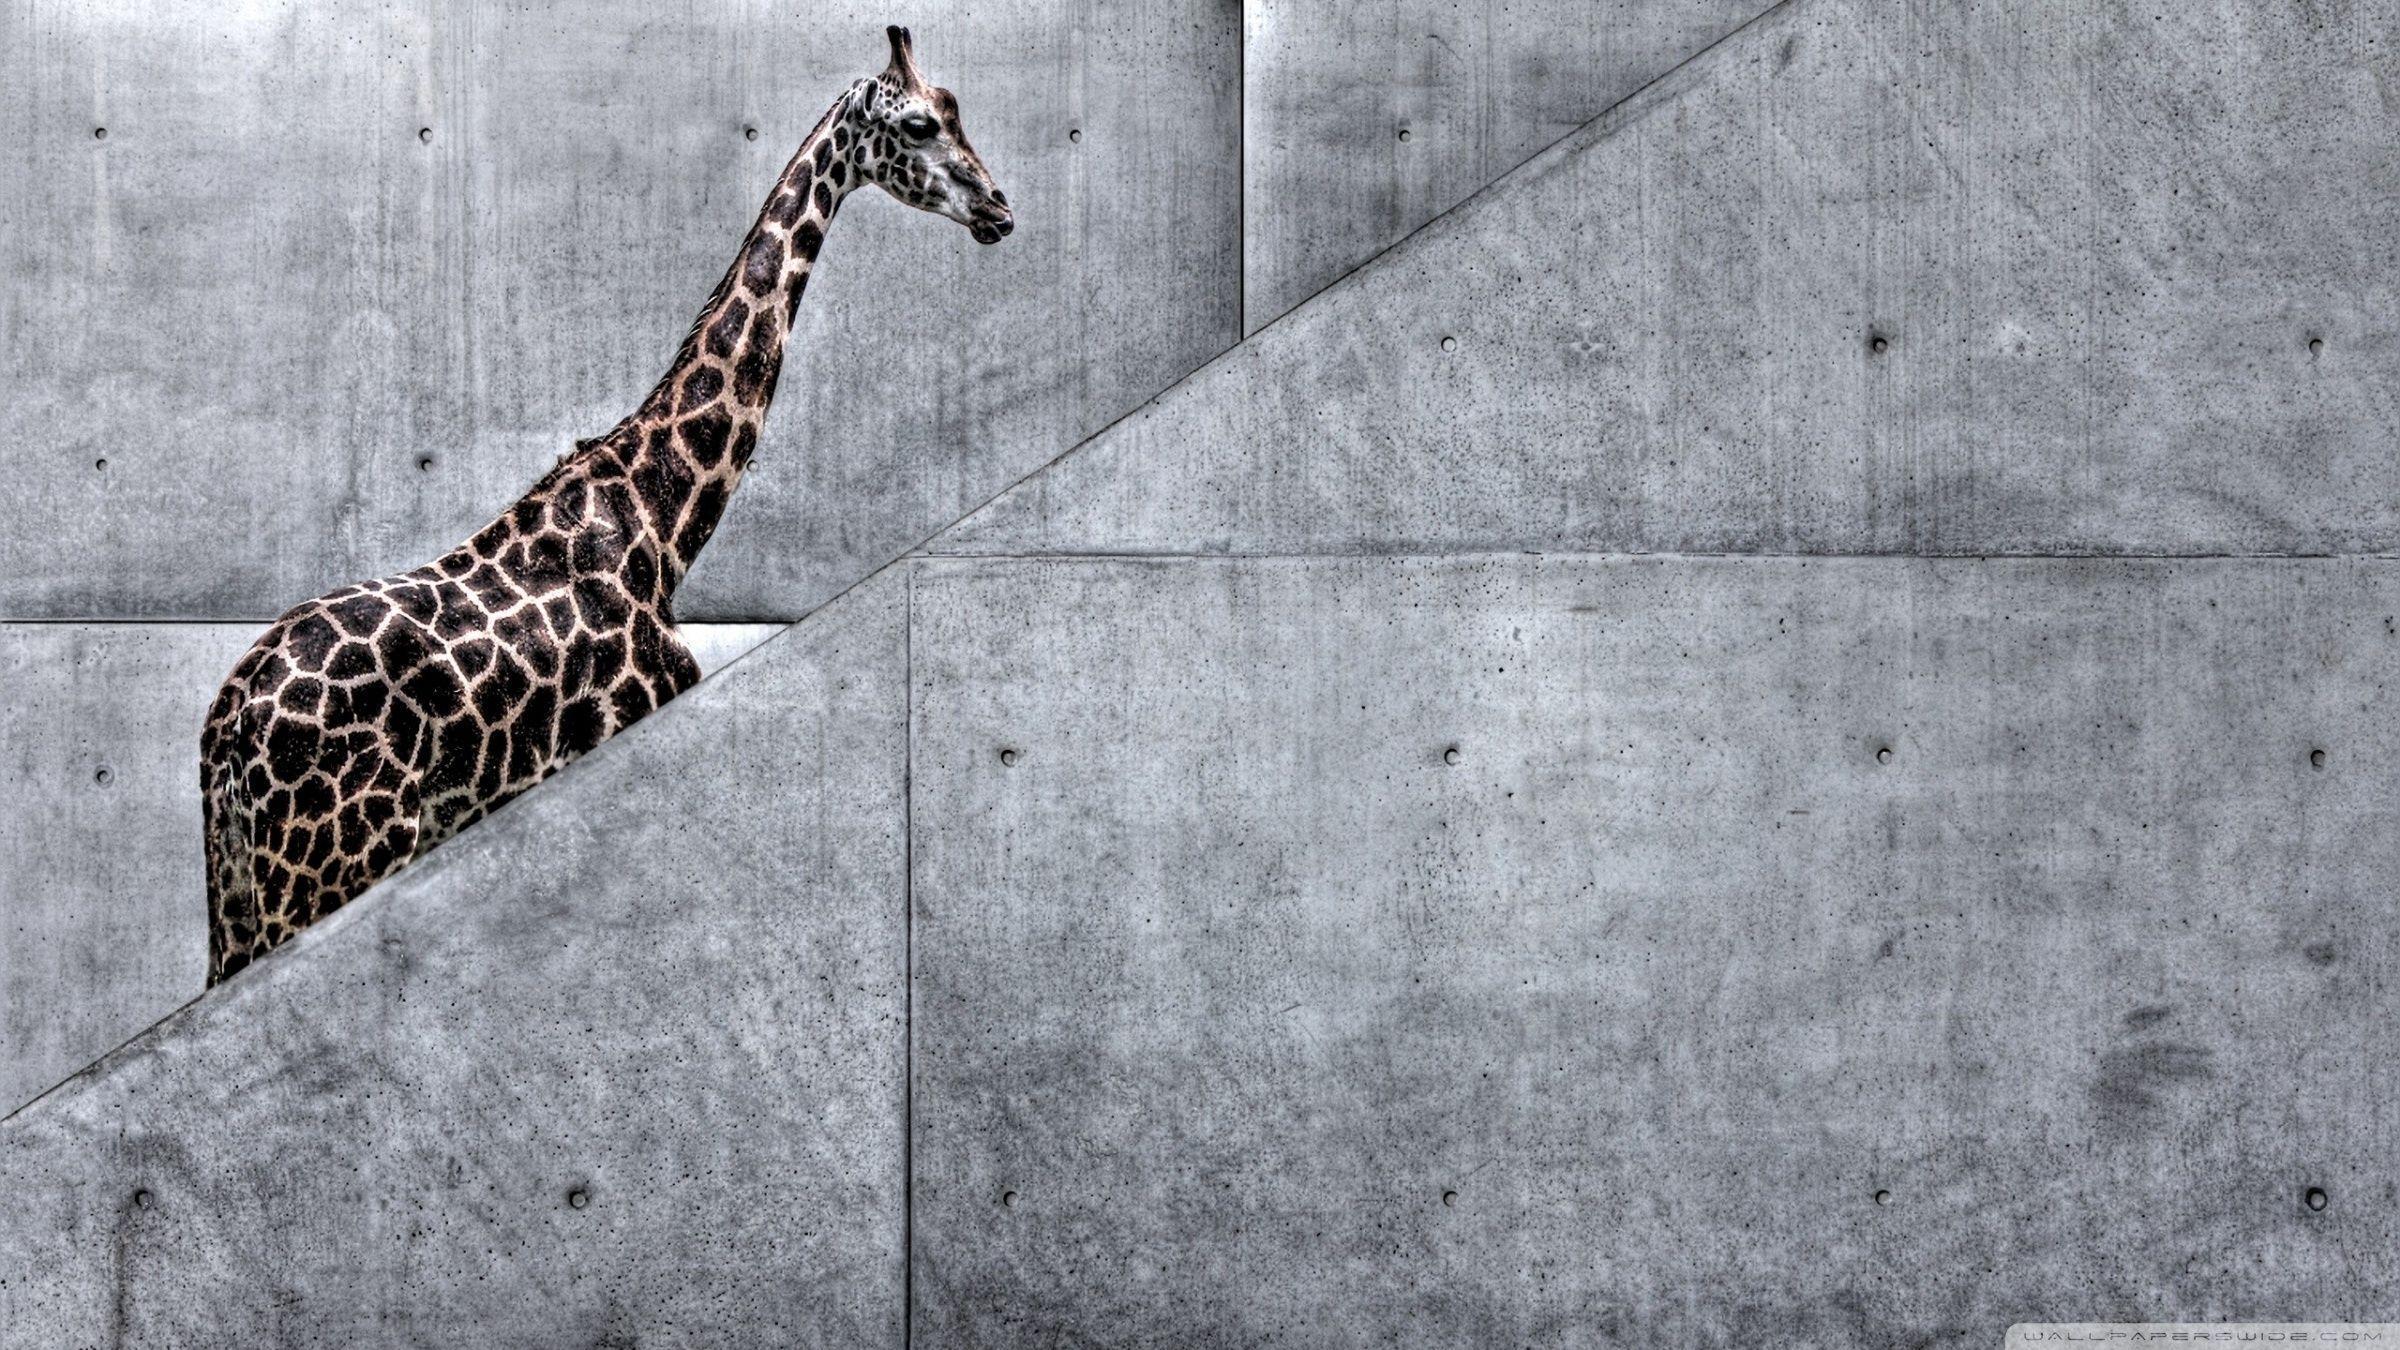 Giraffe Climbing Stairs HD desktop wallpaper, High Definition